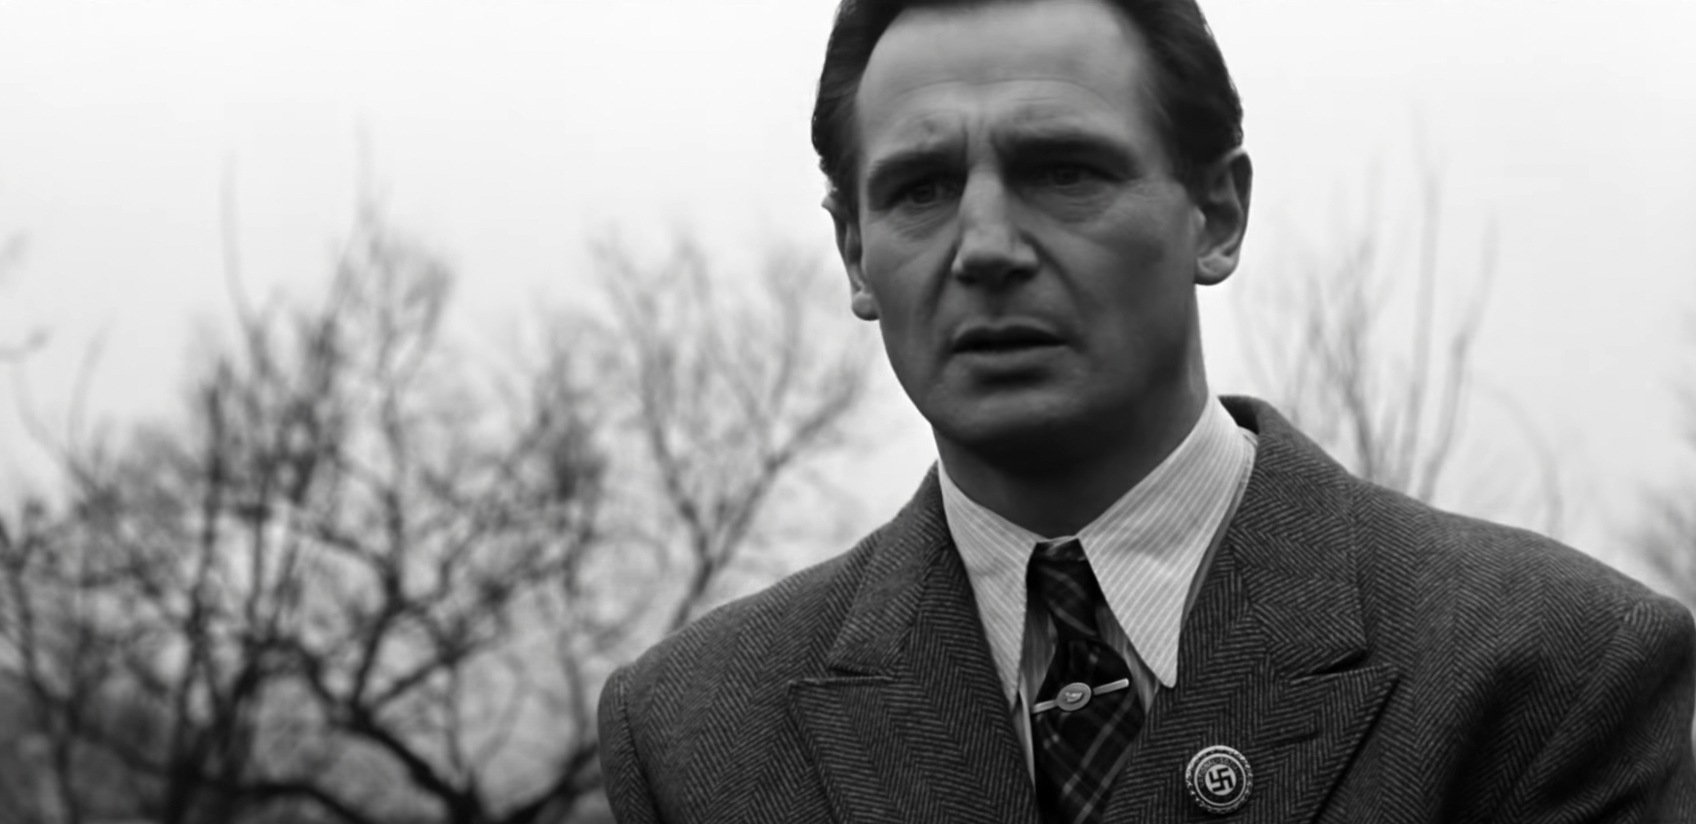 Liam Neeson in a tie